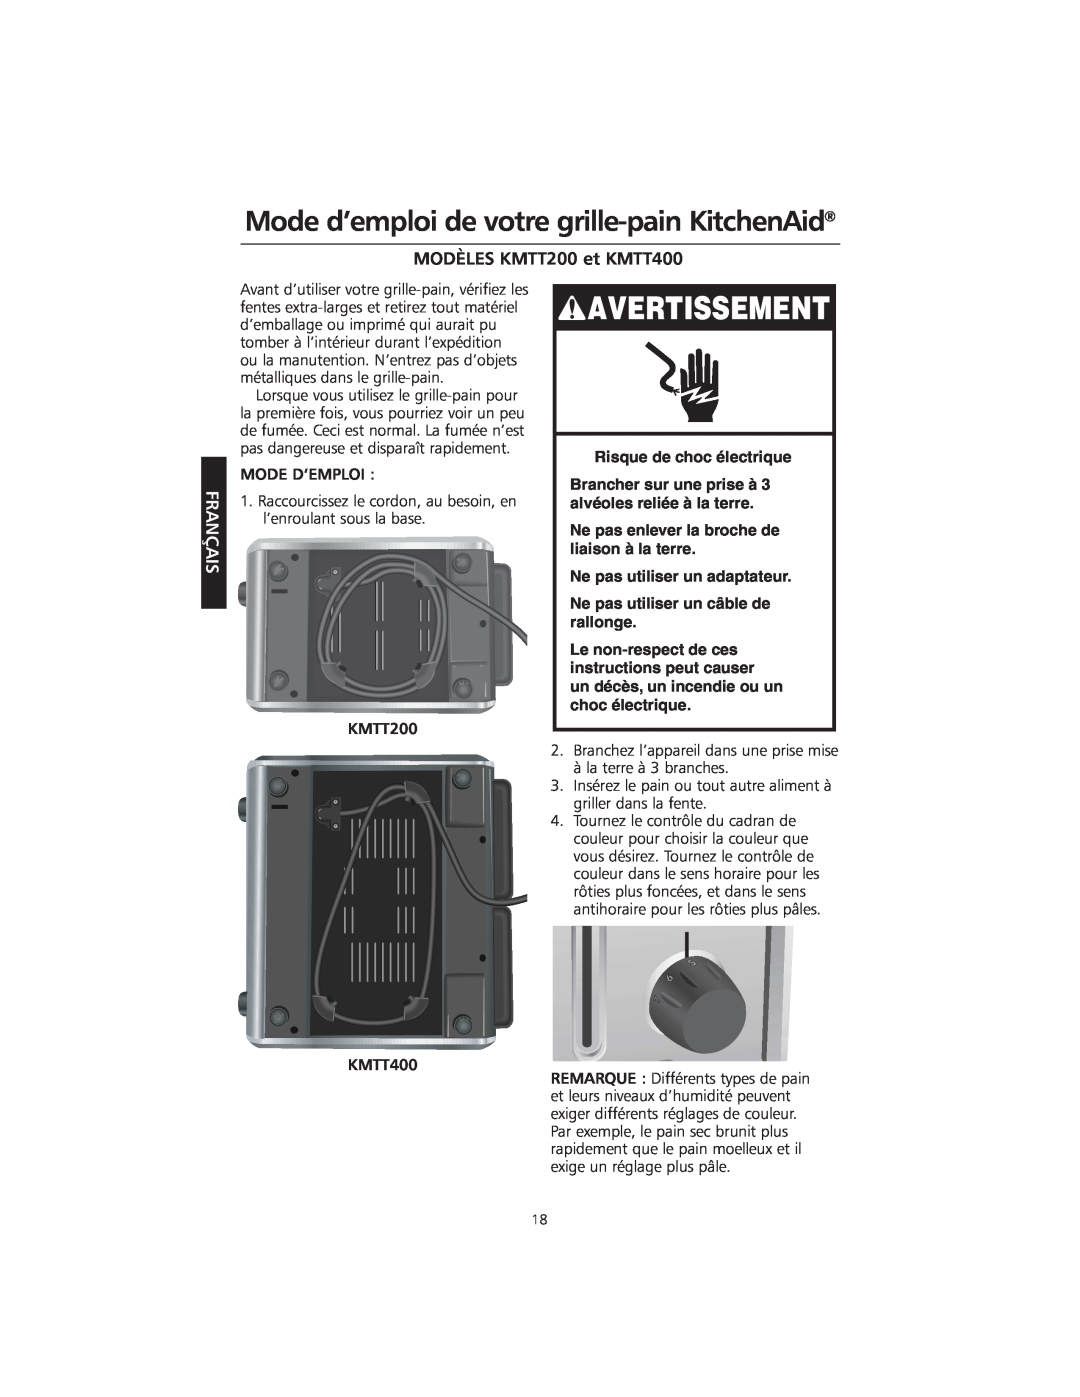 KitchenAid manual Mode d’emploi de votre grille-painKitchenAid, MODÈLES KMTT200 et KMTT400, Avertissement, Français 